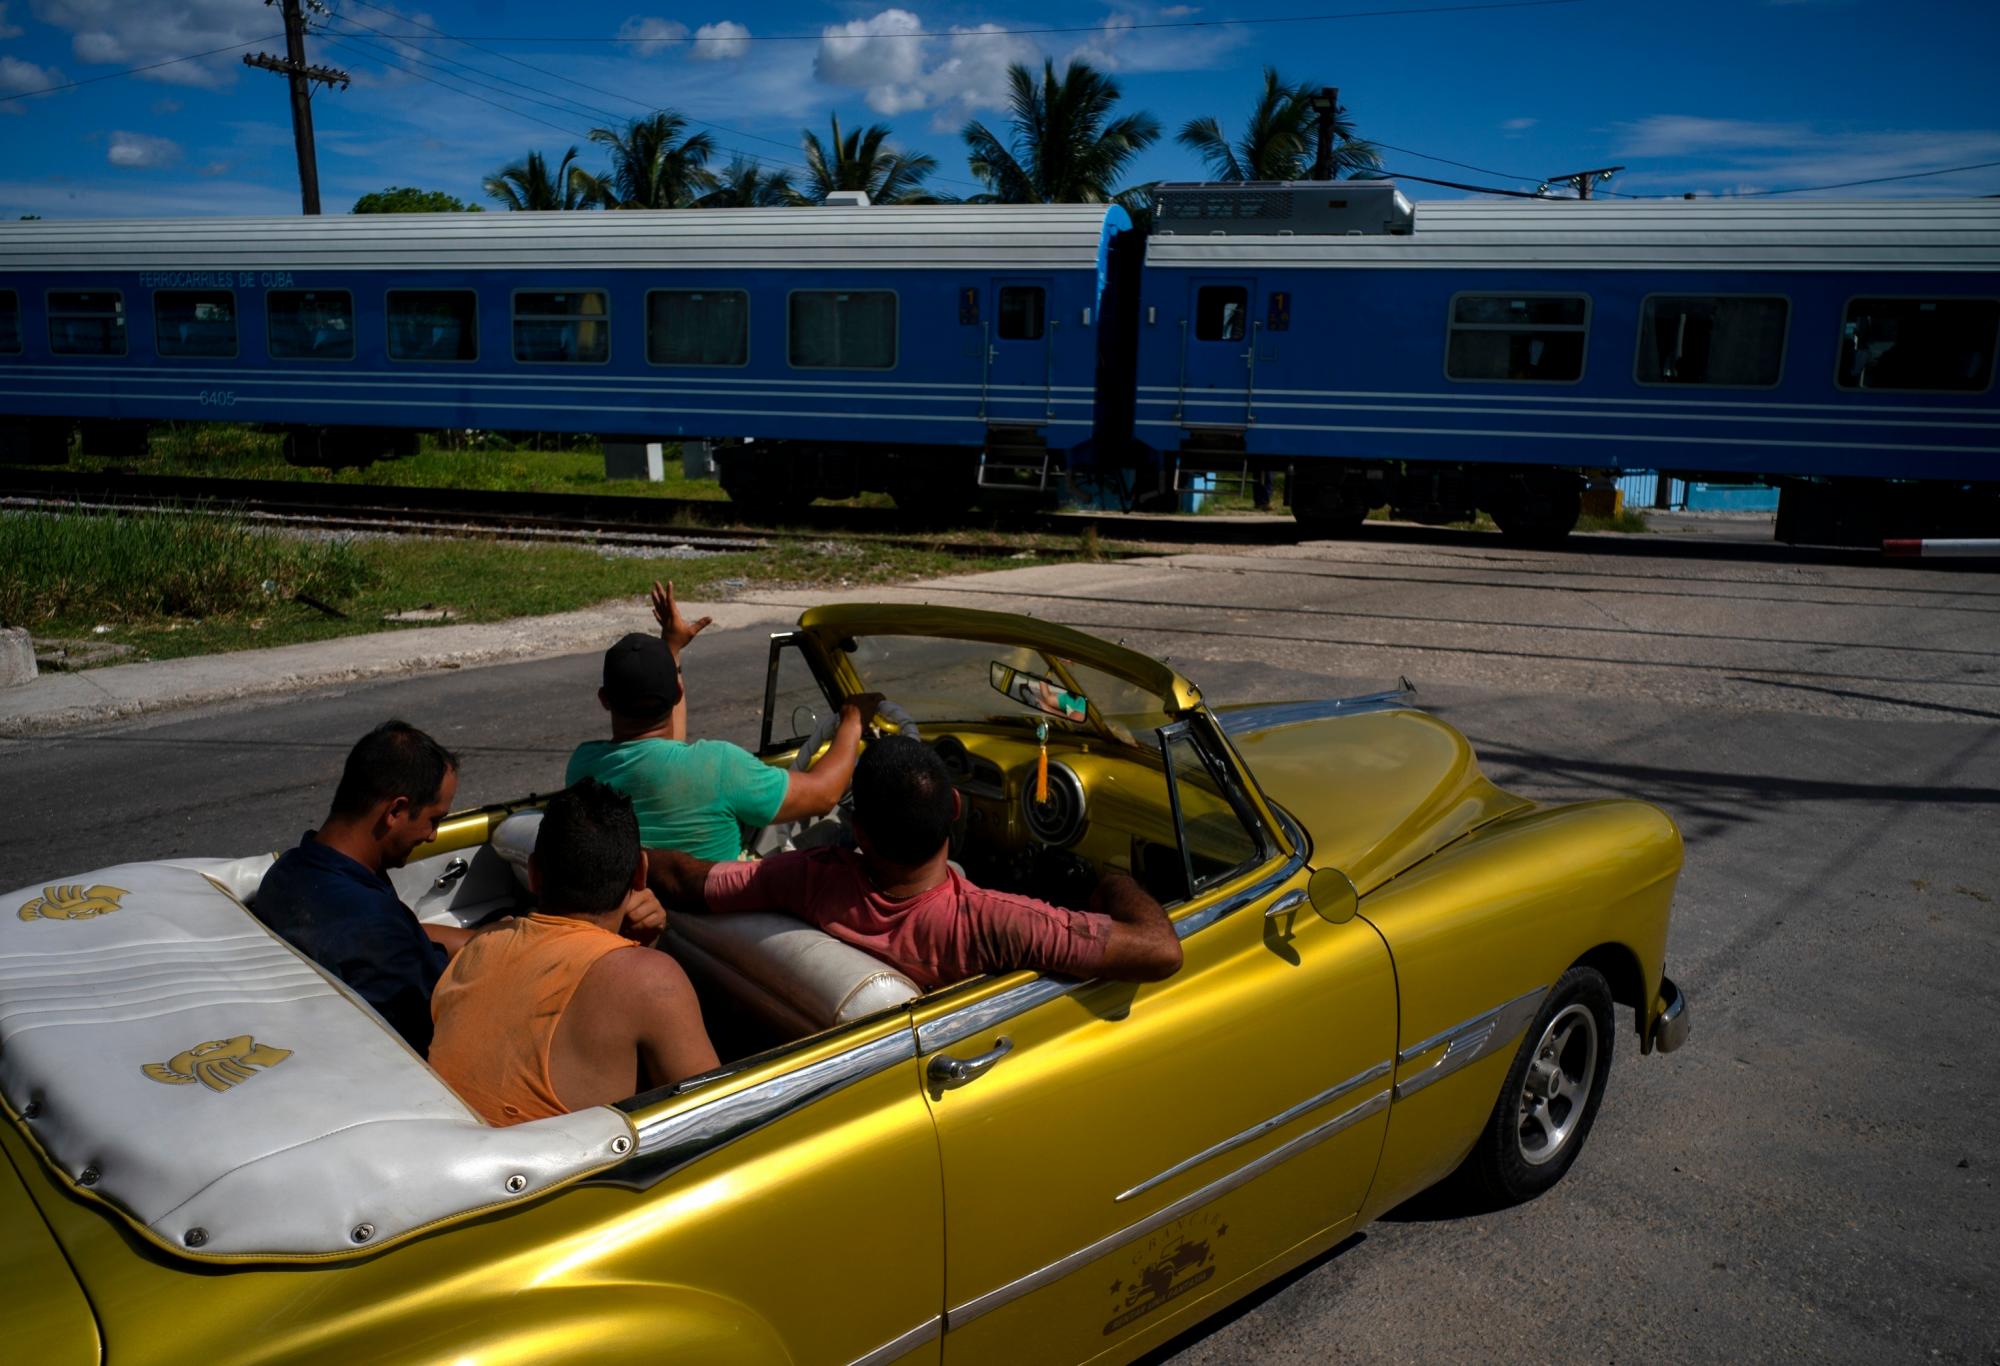 Un conductor de un automóvil clásico estadounidense hace olas cuando el primer tren con equipo nuevo de China pasa por el pasado, en La Habana, Cuba, el sábado 13 de julio de 2019. El primer tren con equipo nuevo de China salió de La Habana el sábado, transportando pasajeros en el El inicio de un viaje de 915 kilómetros (516 millas) hacia el extremo oriental de la isla mientras el gobierno trata de revisar el sistema ferroviario decrépito y envejecido del país. 